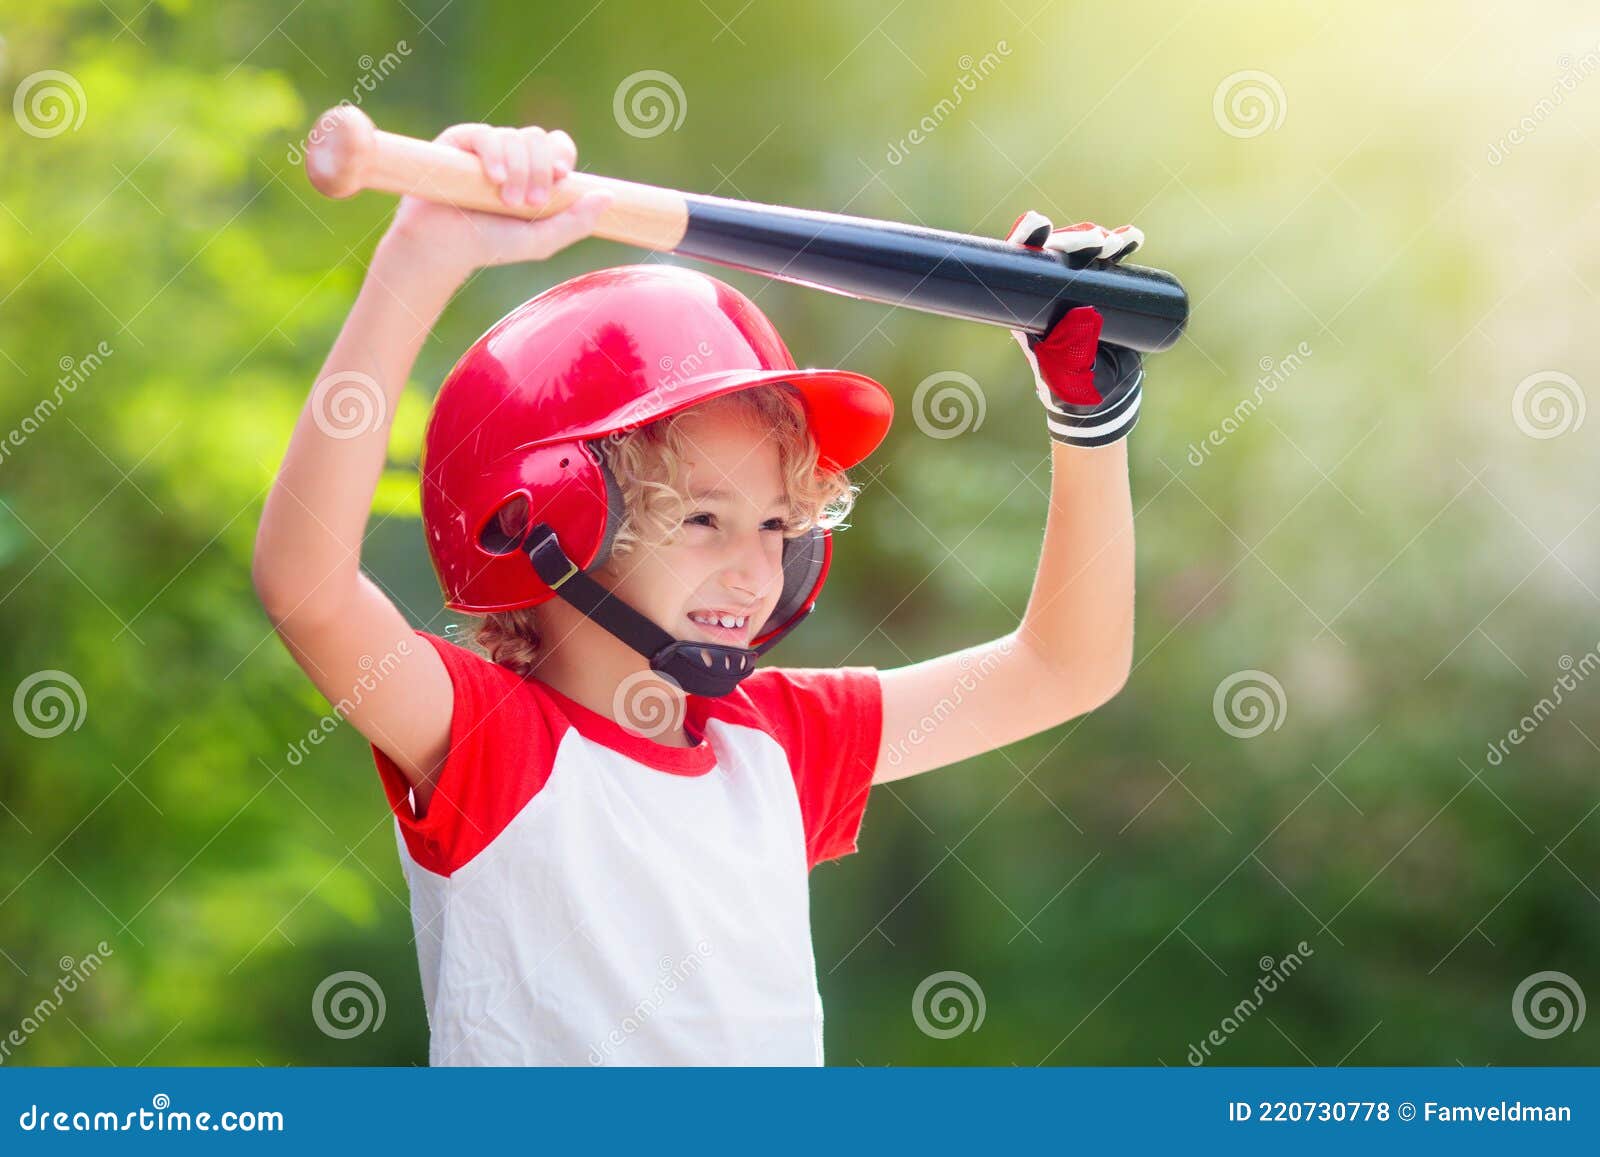 dramatisch kopiëren wortel Kinderen Spelen Honkbal. Kind Met Knuppel En Bal Stock Foto - Image of  honkbal, vriendschap: 220730778